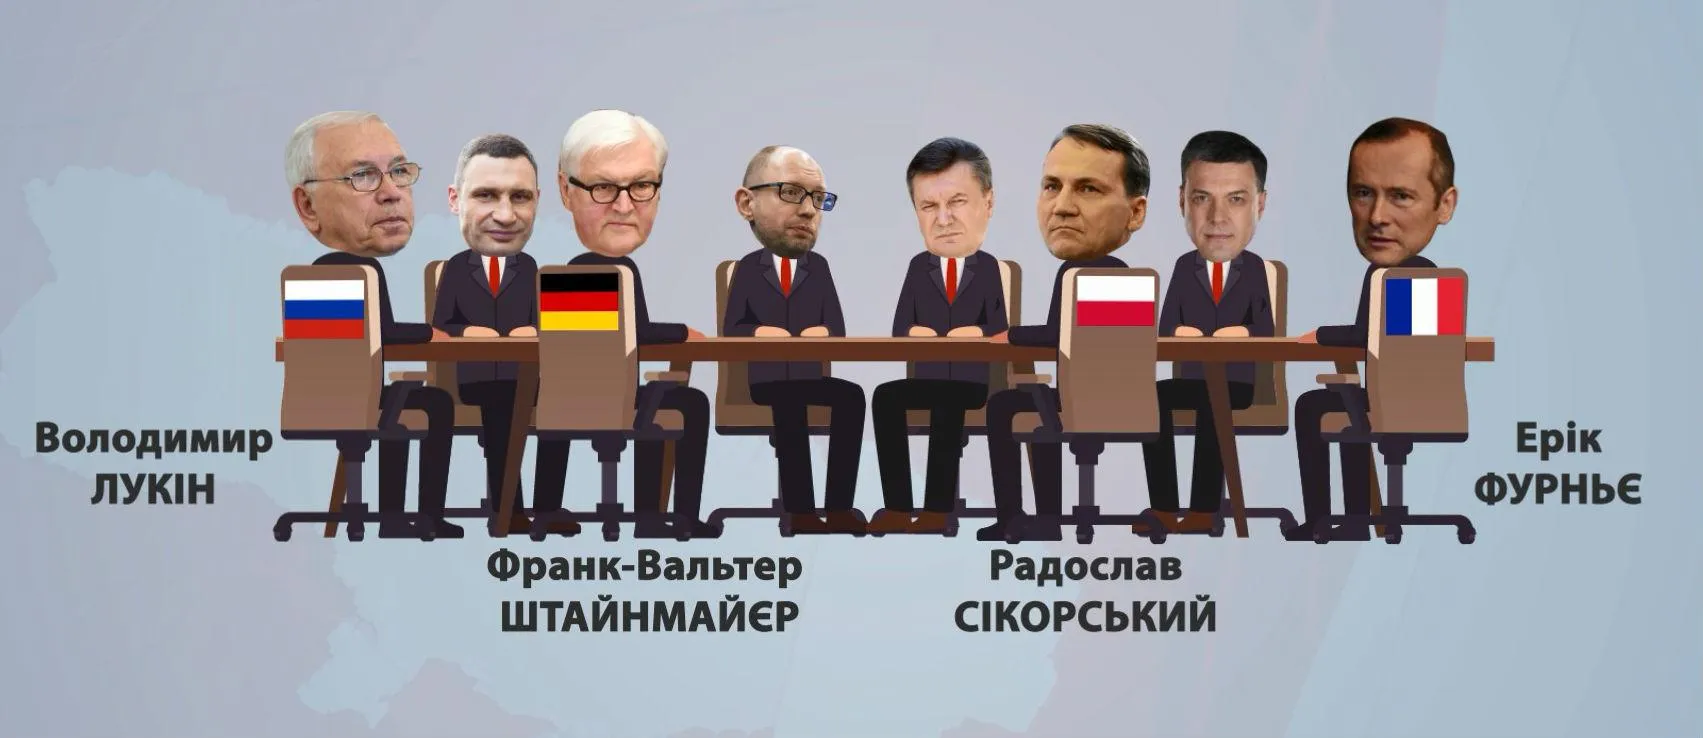 Євромайдан Небесна сотня розстріли Янукович